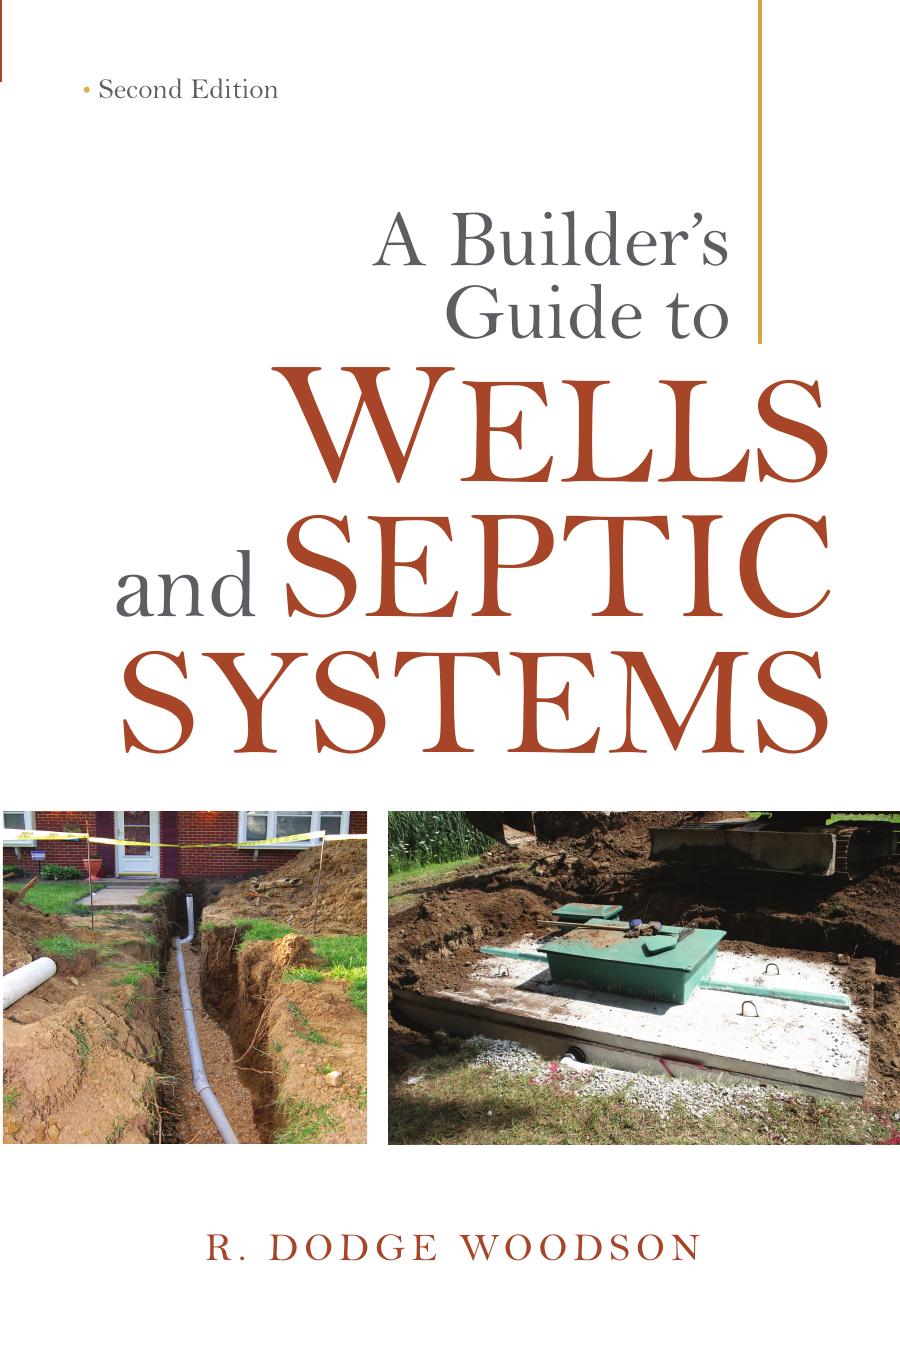 A Builderâs Guide to Wells and Septic Systems, Second Edition by R. Dodge Woodson